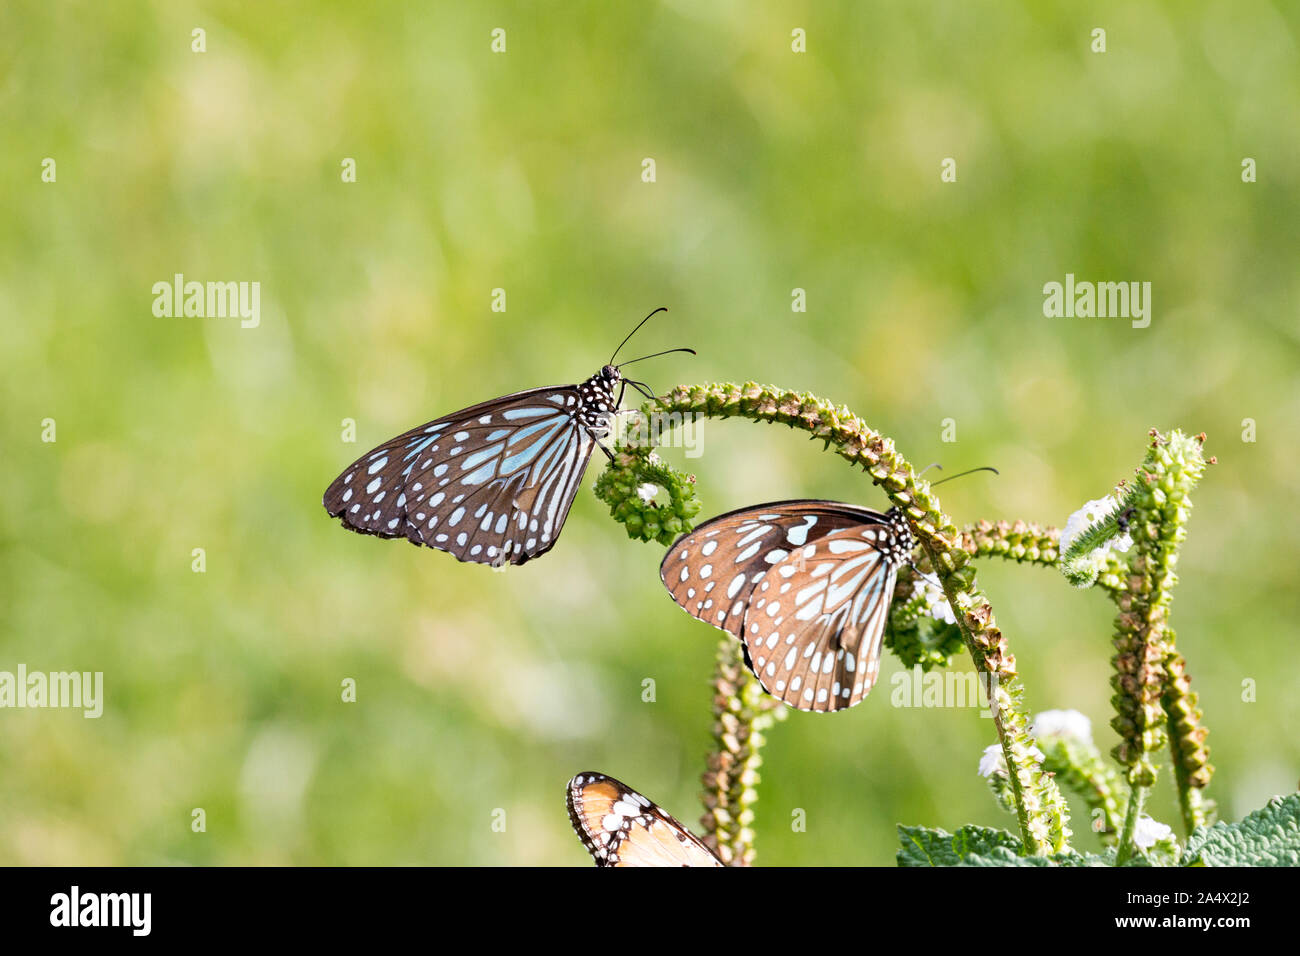 Zwei blaue Schmetterlinge Fütterung auf eine grüne Pflanze im grünen Gras Feld um einen leeren See in Südindien - Tiruvannamalai 2019 Stockfoto